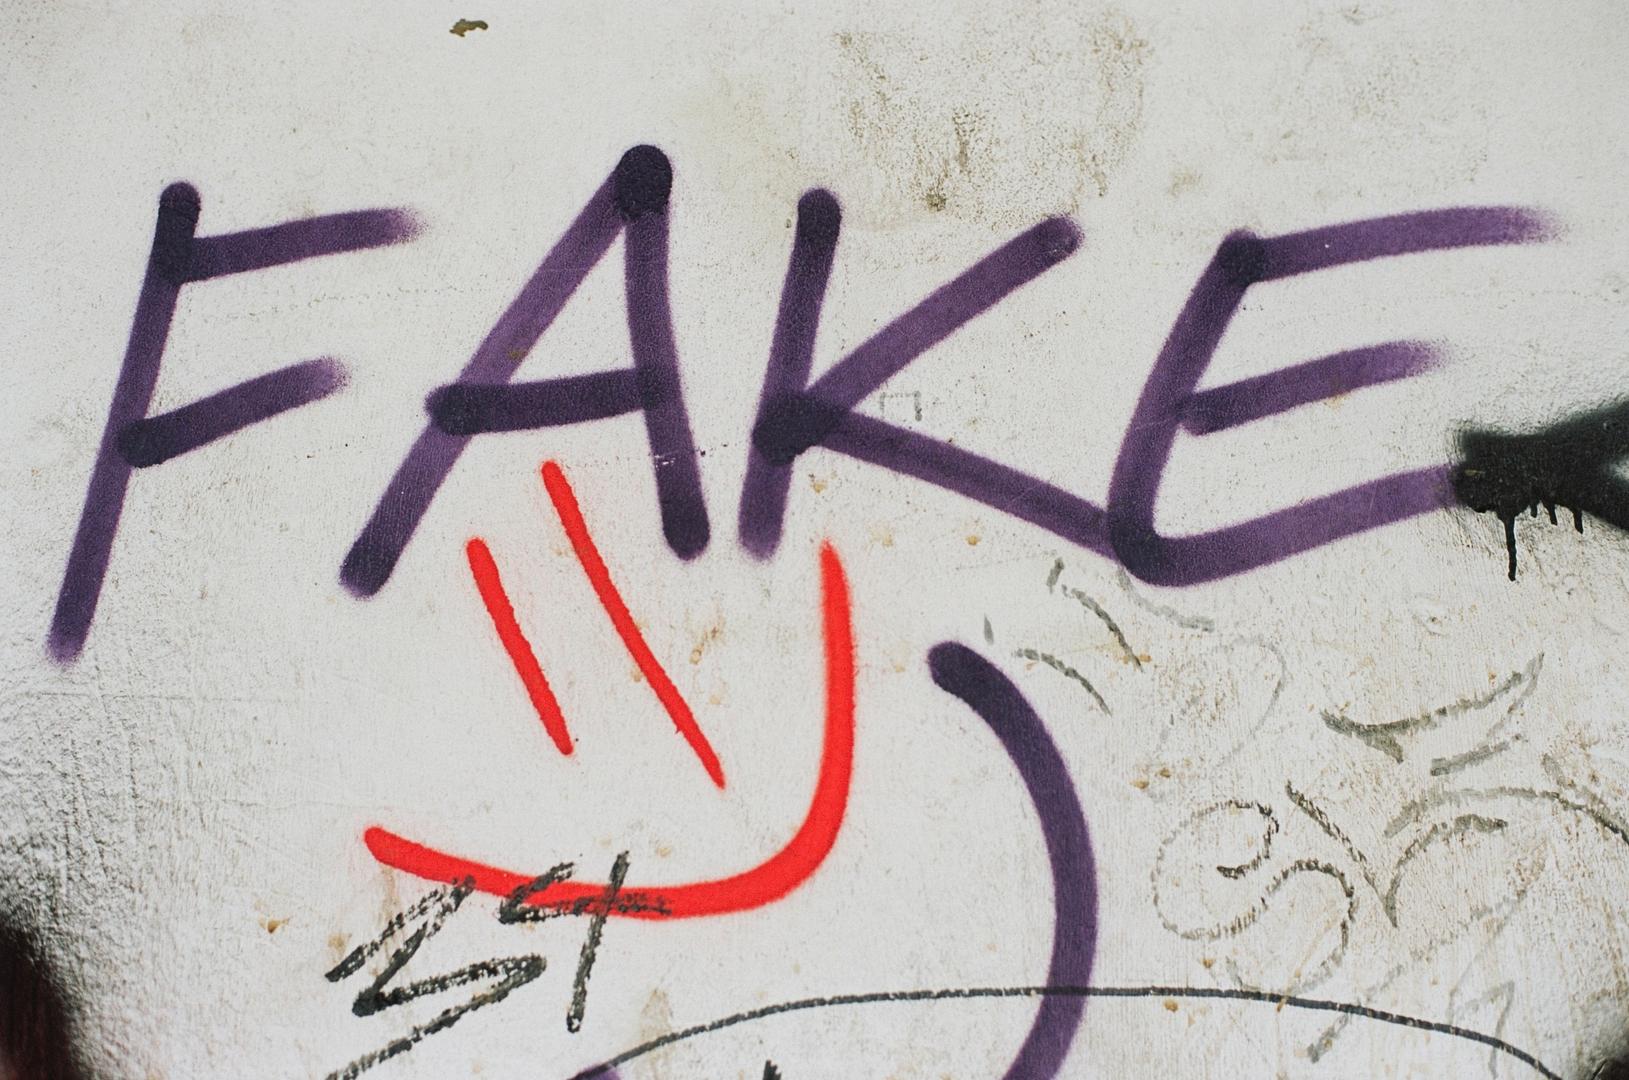 einfaches Graffiti mit dem Wort Fake und einem lachenden Smiley